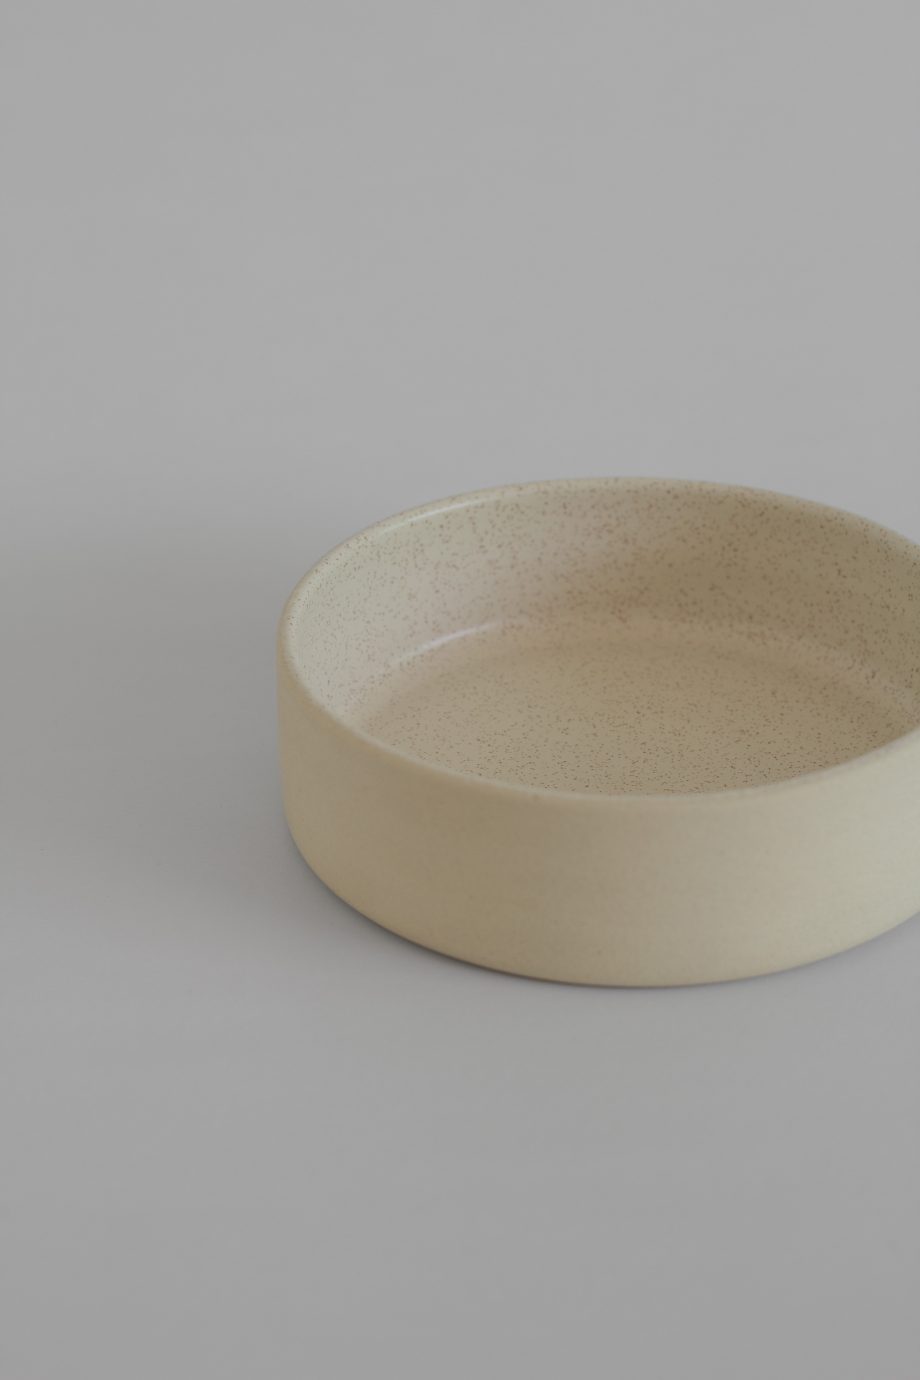 Bowl de cerâmica creme com interior vidrado feito em Portugal de forma artesanal.